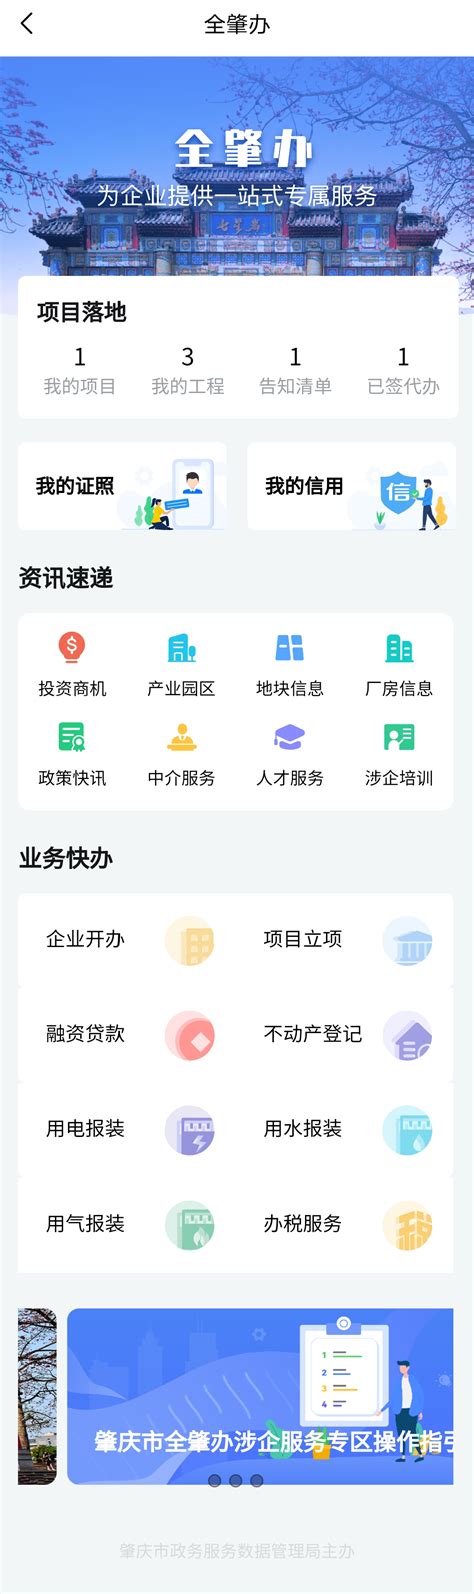 肇庆市企业综合服务平台